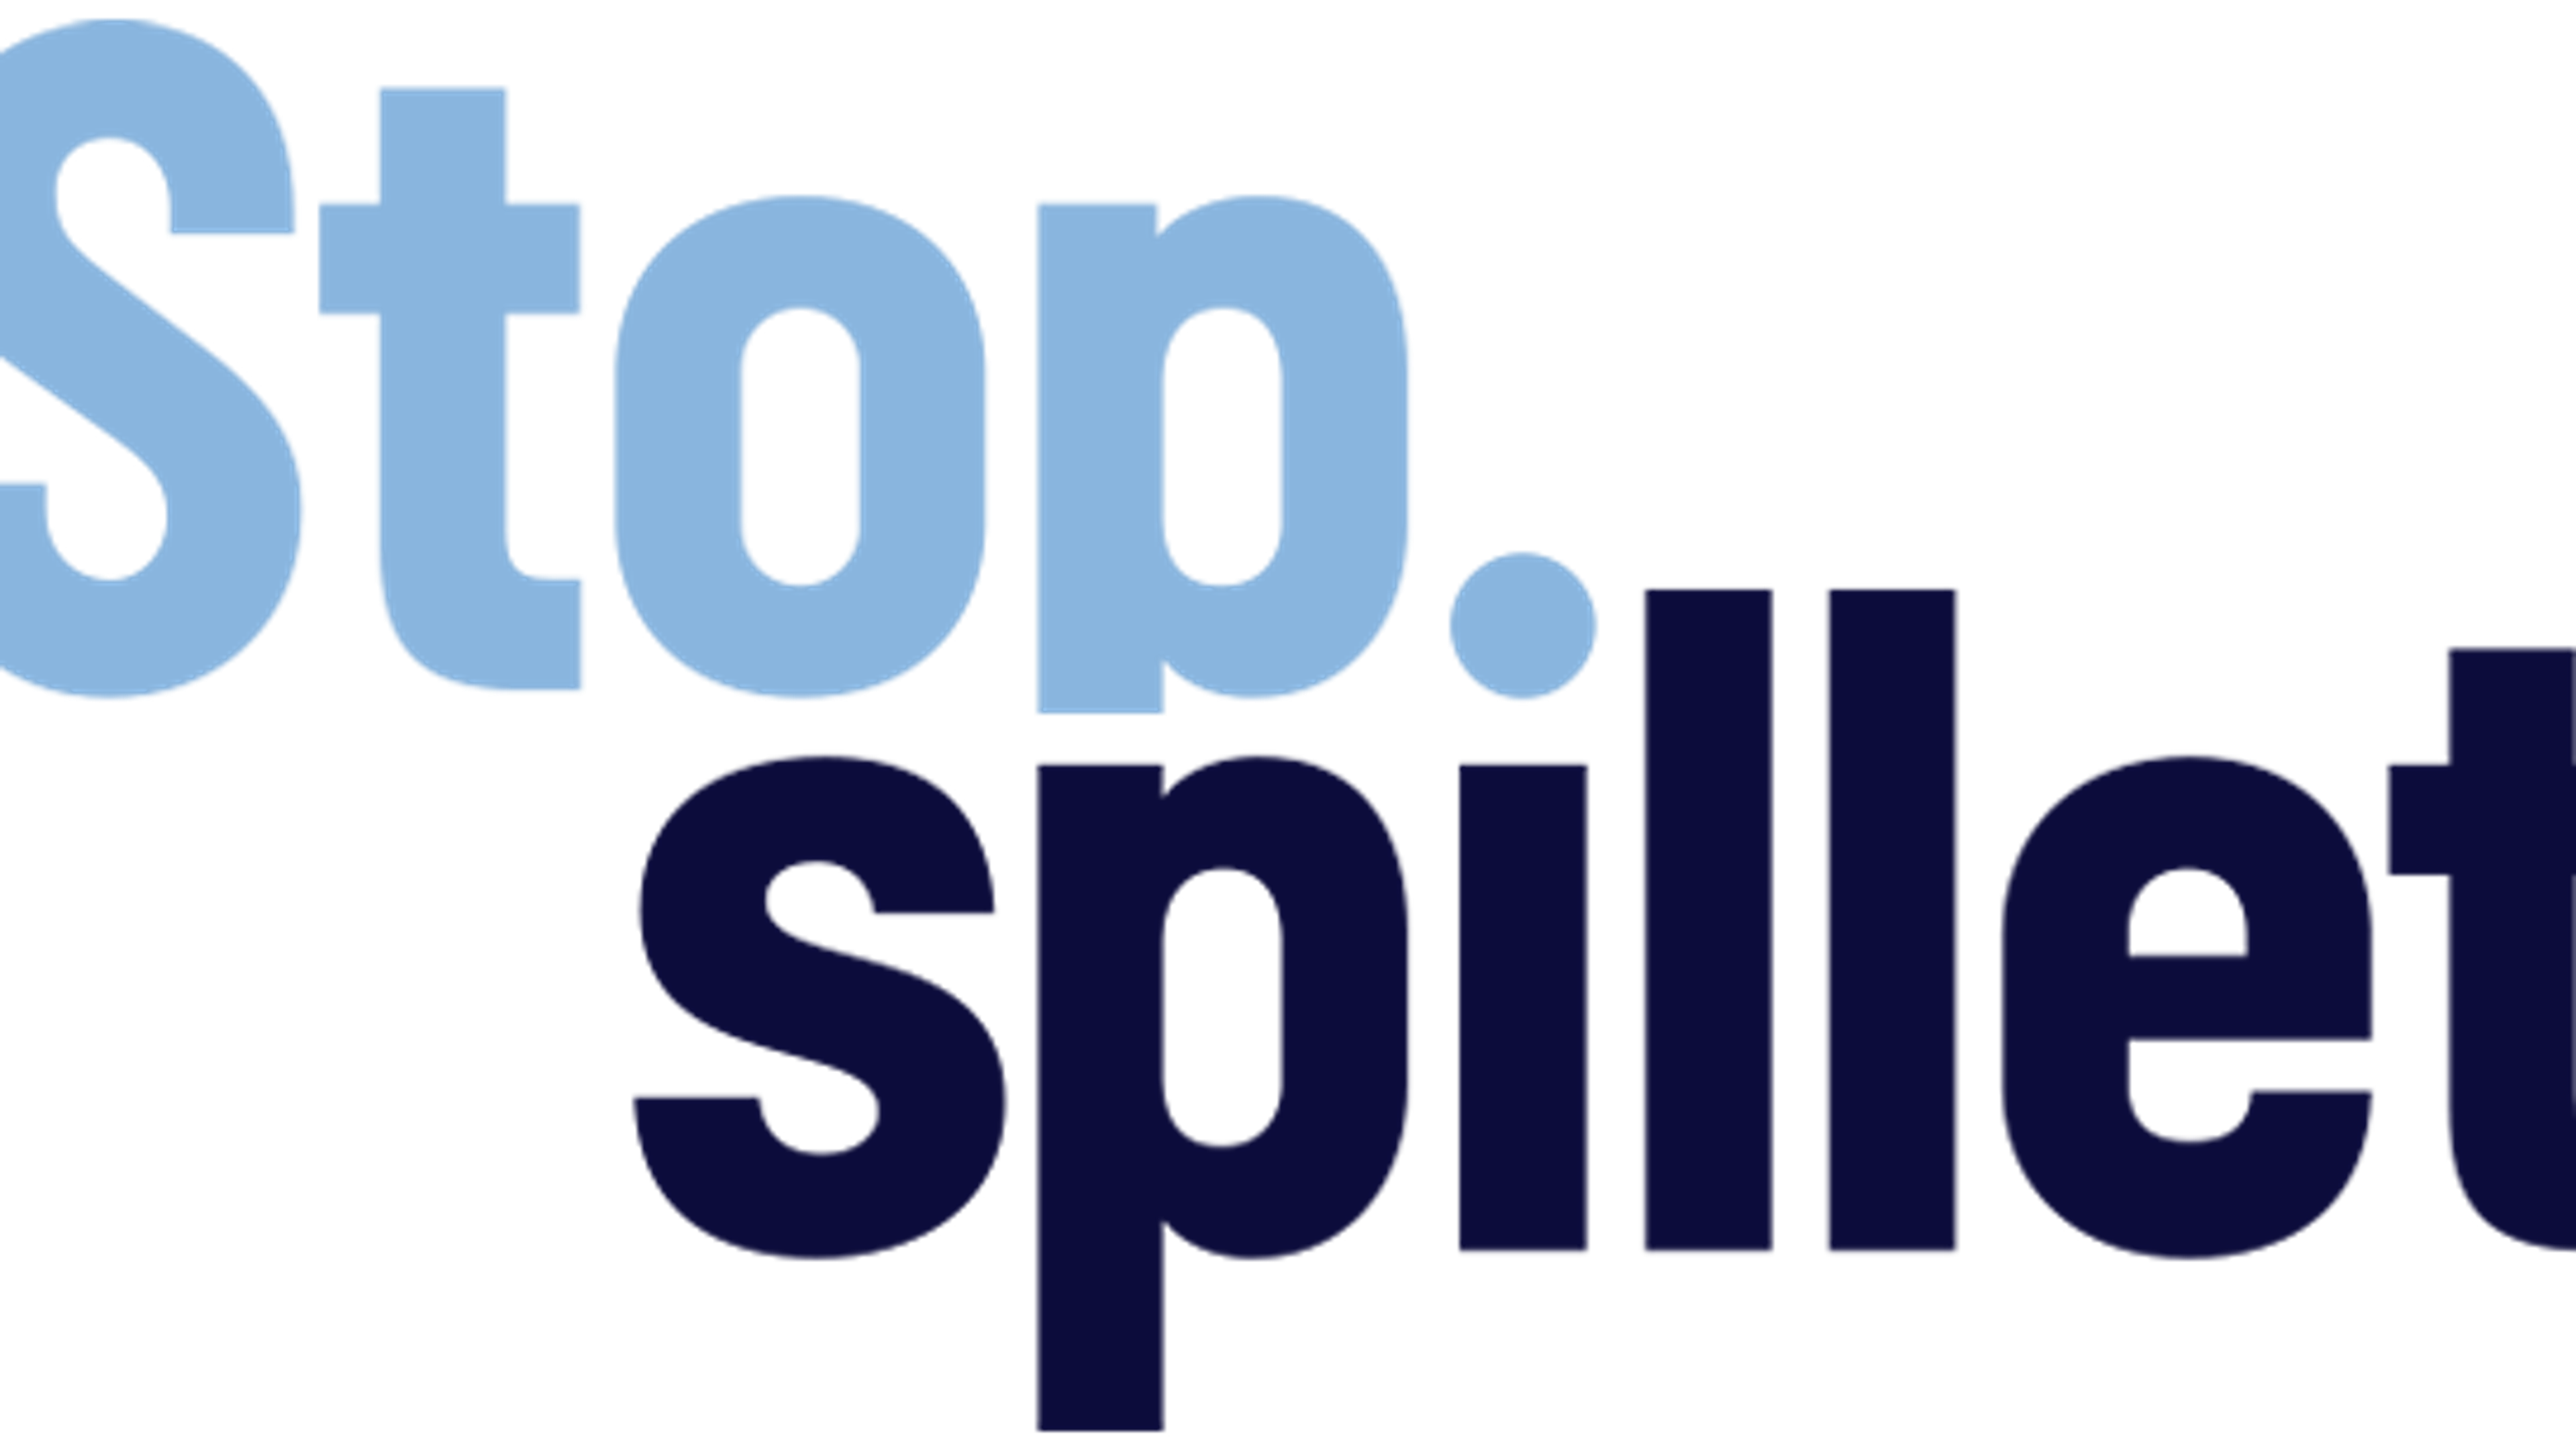 Billede af StopSpillets logo. 'Stop' står skrevet øverst med en lyseblå skrifttype, hvor der nedenunder står 'spillet' skrevet med en mørkere farve. I'et i spillet er placeret, så det ligner et punktum efter stop.